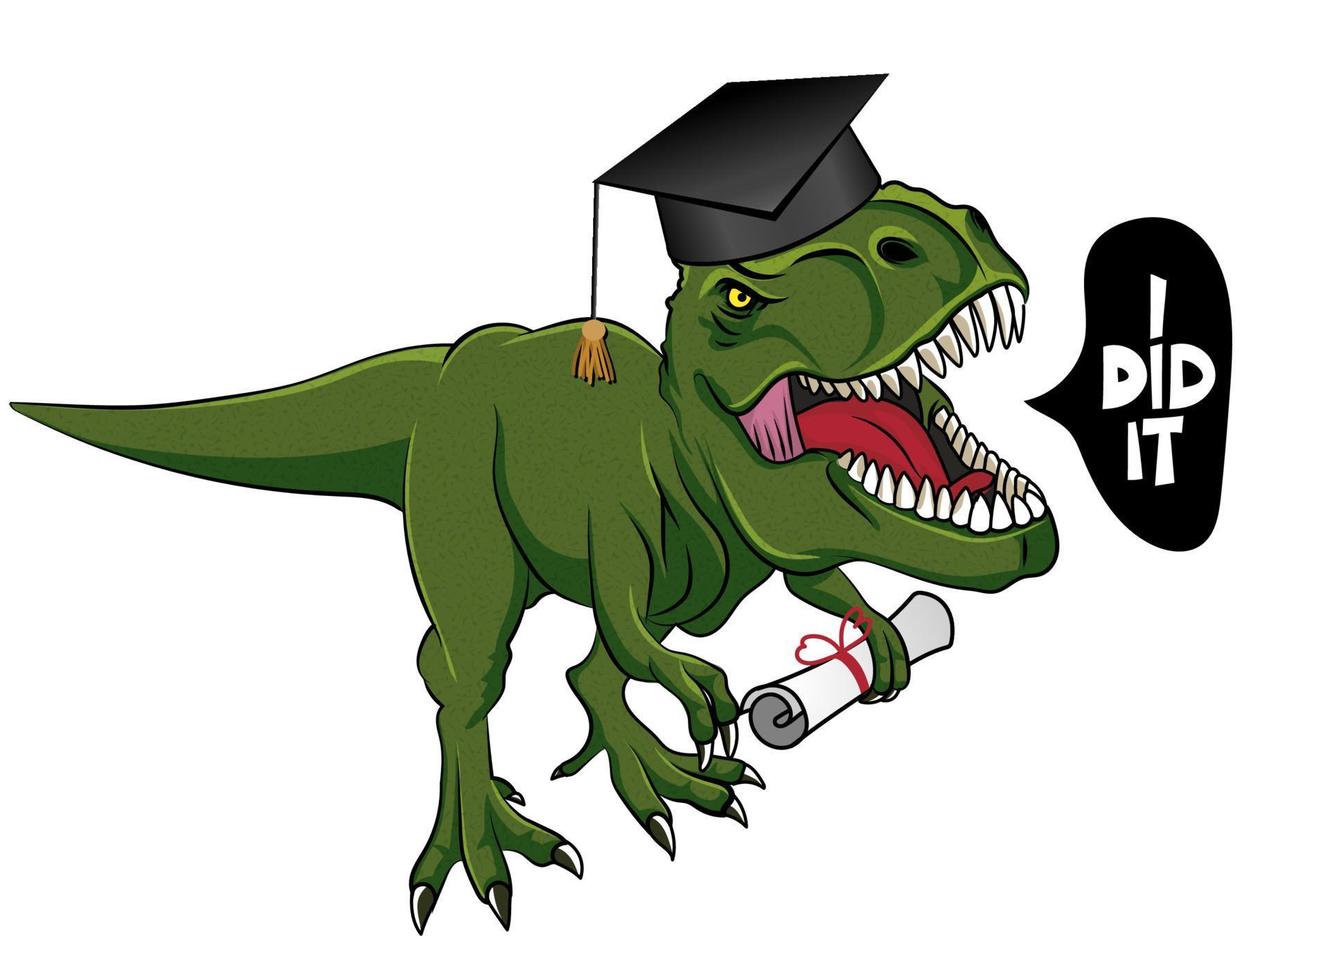 ich habe es geschafft - t rex tyrannosaurus in graduiertenmütze. süßer lächelnder glücklicher dinosaurier mit diplom. Dino-Charakter im Cartoon-Stil. Glückwunsch Absolventen. gut für T-Shirt, Becher, Geschenk. vektor